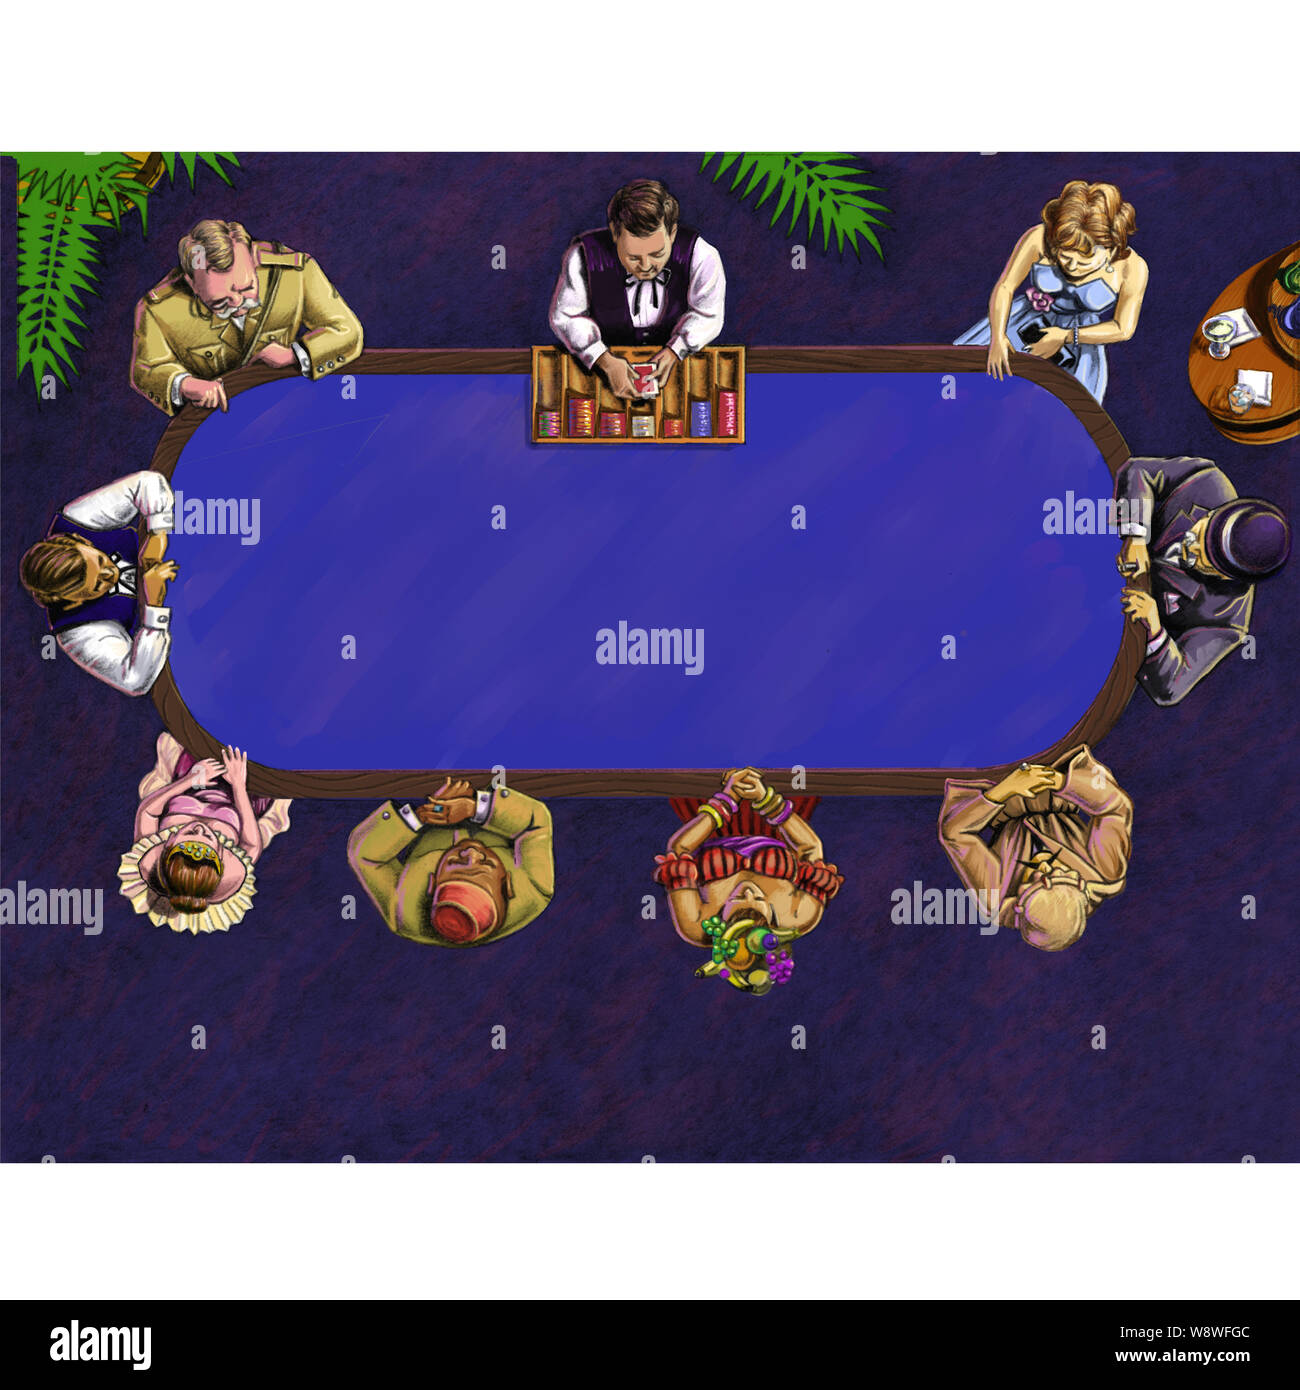 Tavolo del poker, vista aerea, con una varietà di personaggio animato i giocatori e un rivenditore con un nastro il filtro bow tie & una scatola in legno di poker chips Foto Stock